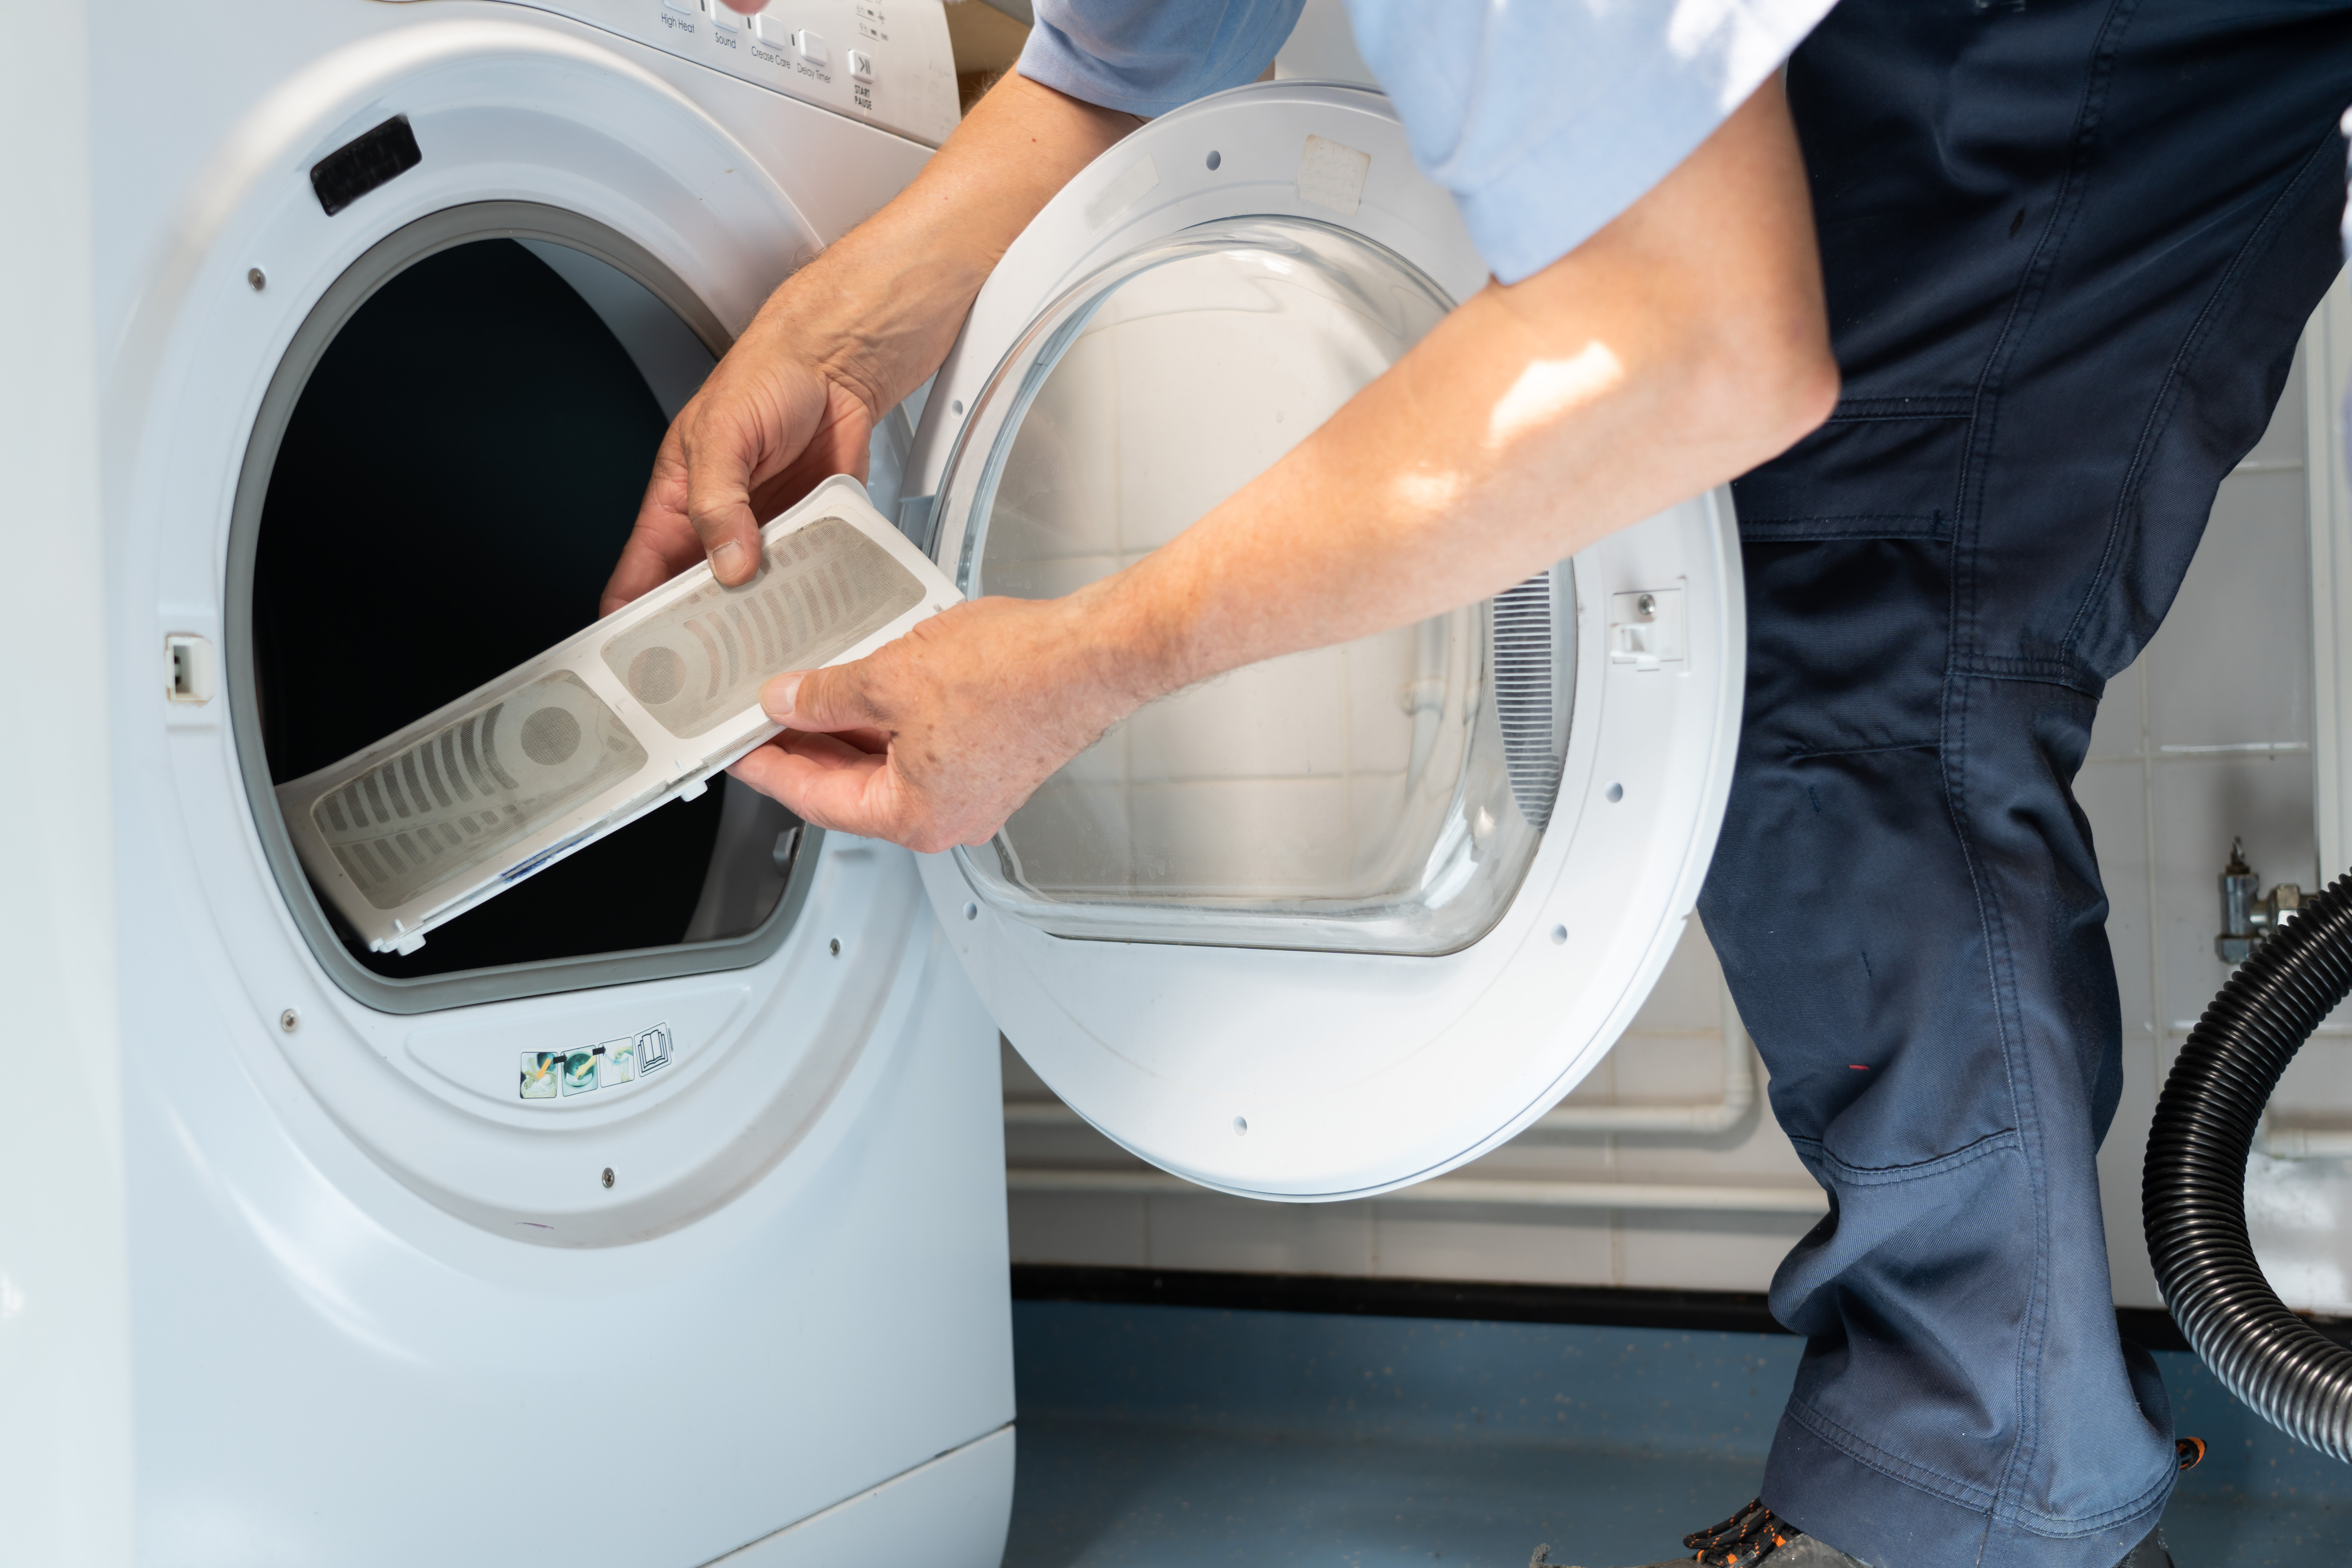 Trucos limpieza: Todos los métodos para quitar los pelos de la ropa en la  lavadora, a examen: estos son los que funcionan de verdad